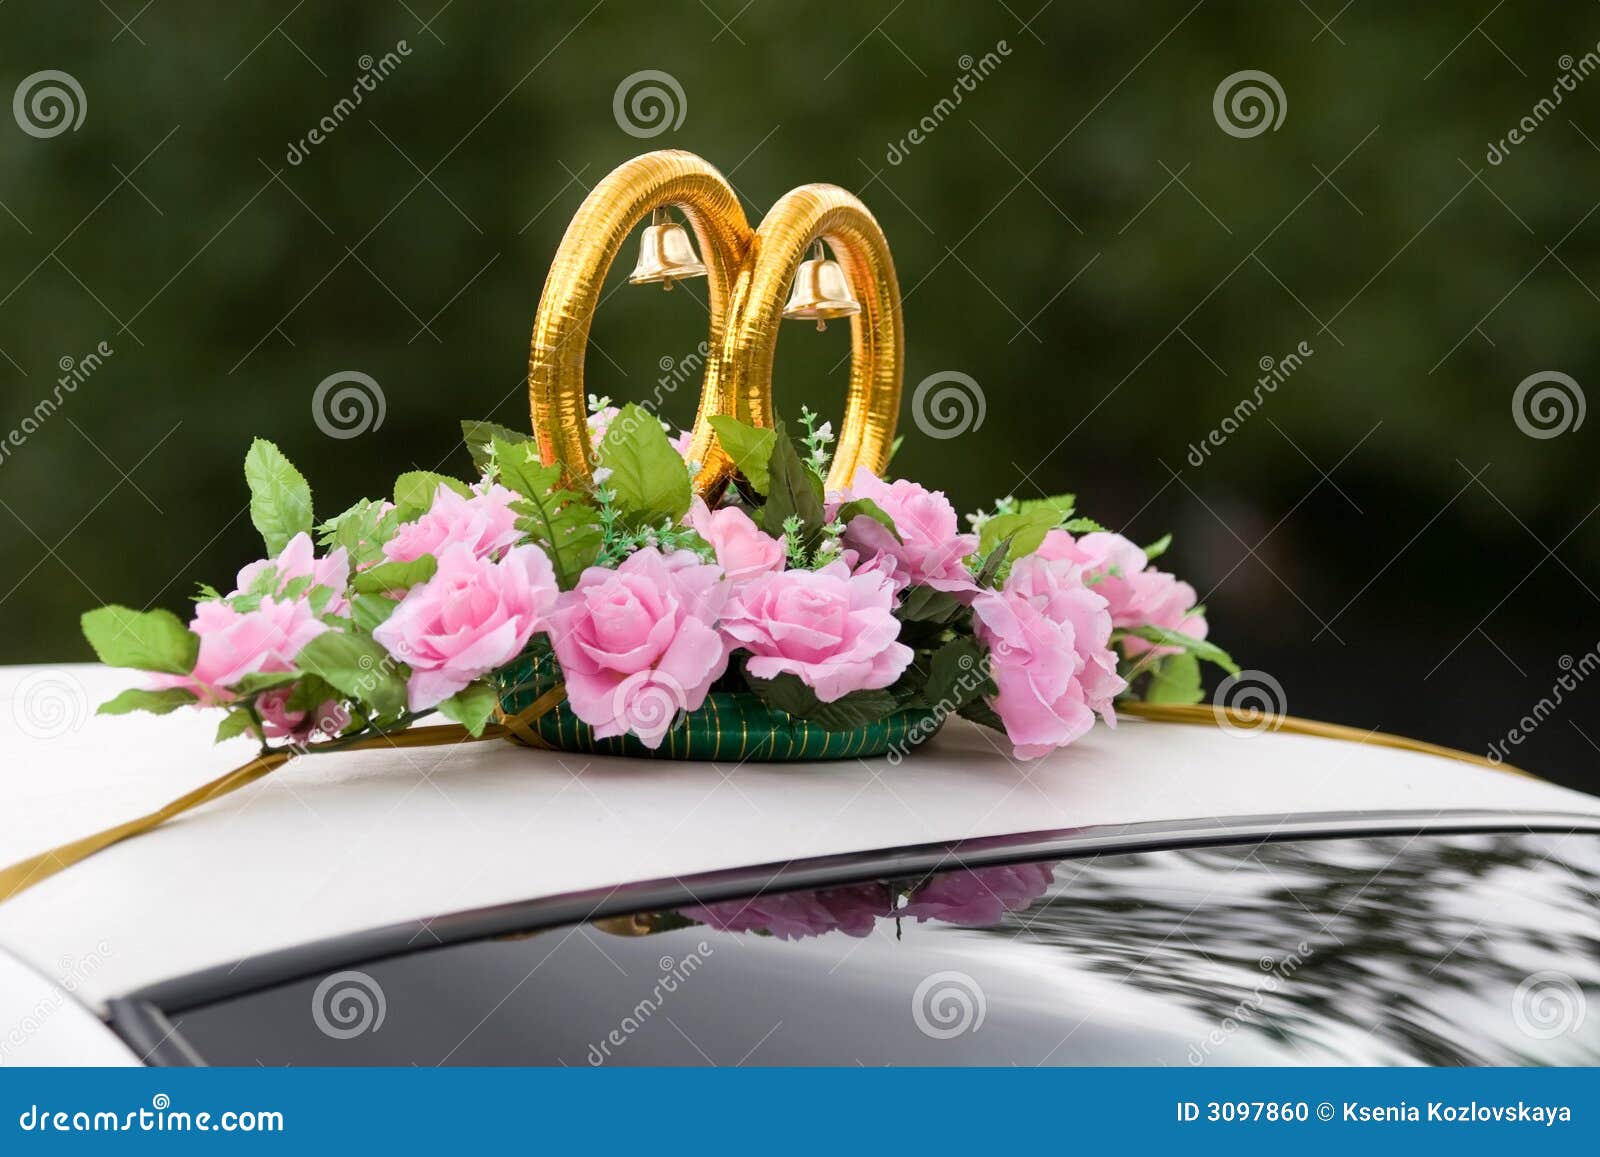 Wedding car decoration stock photo. Image of decorated - 3097860